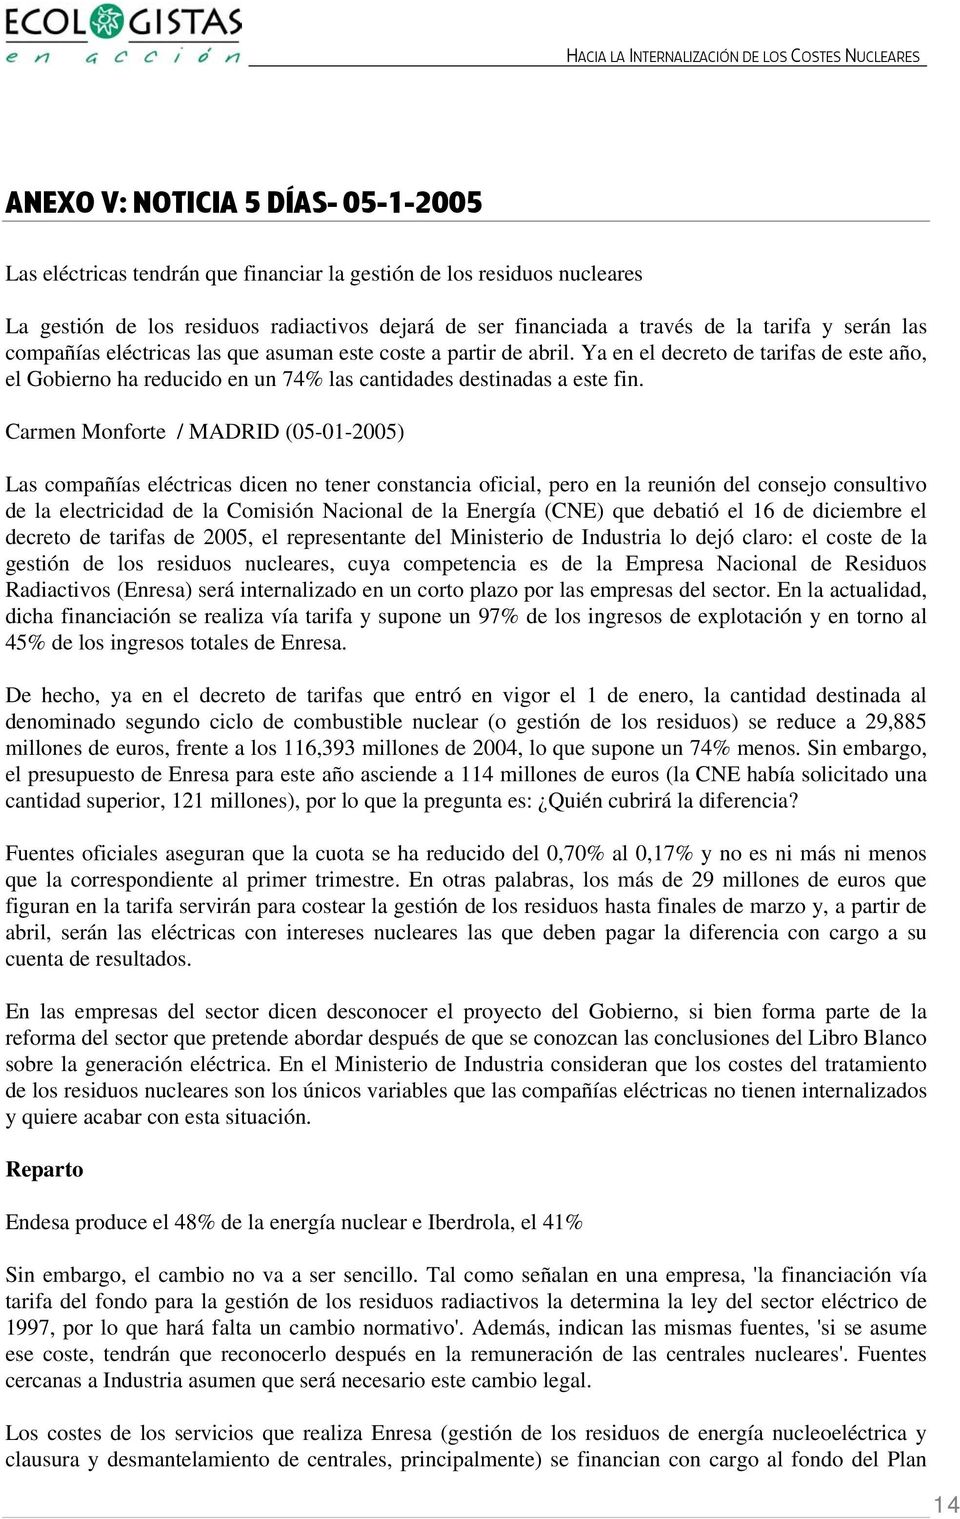 Carmen Monforte / MADRID (05-01-2005) Las compañías eléctricas dicen no tener constancia oficial, pero en la reunión del consejo consultivo de la electricidad de la Comisión Nacional de la Energía